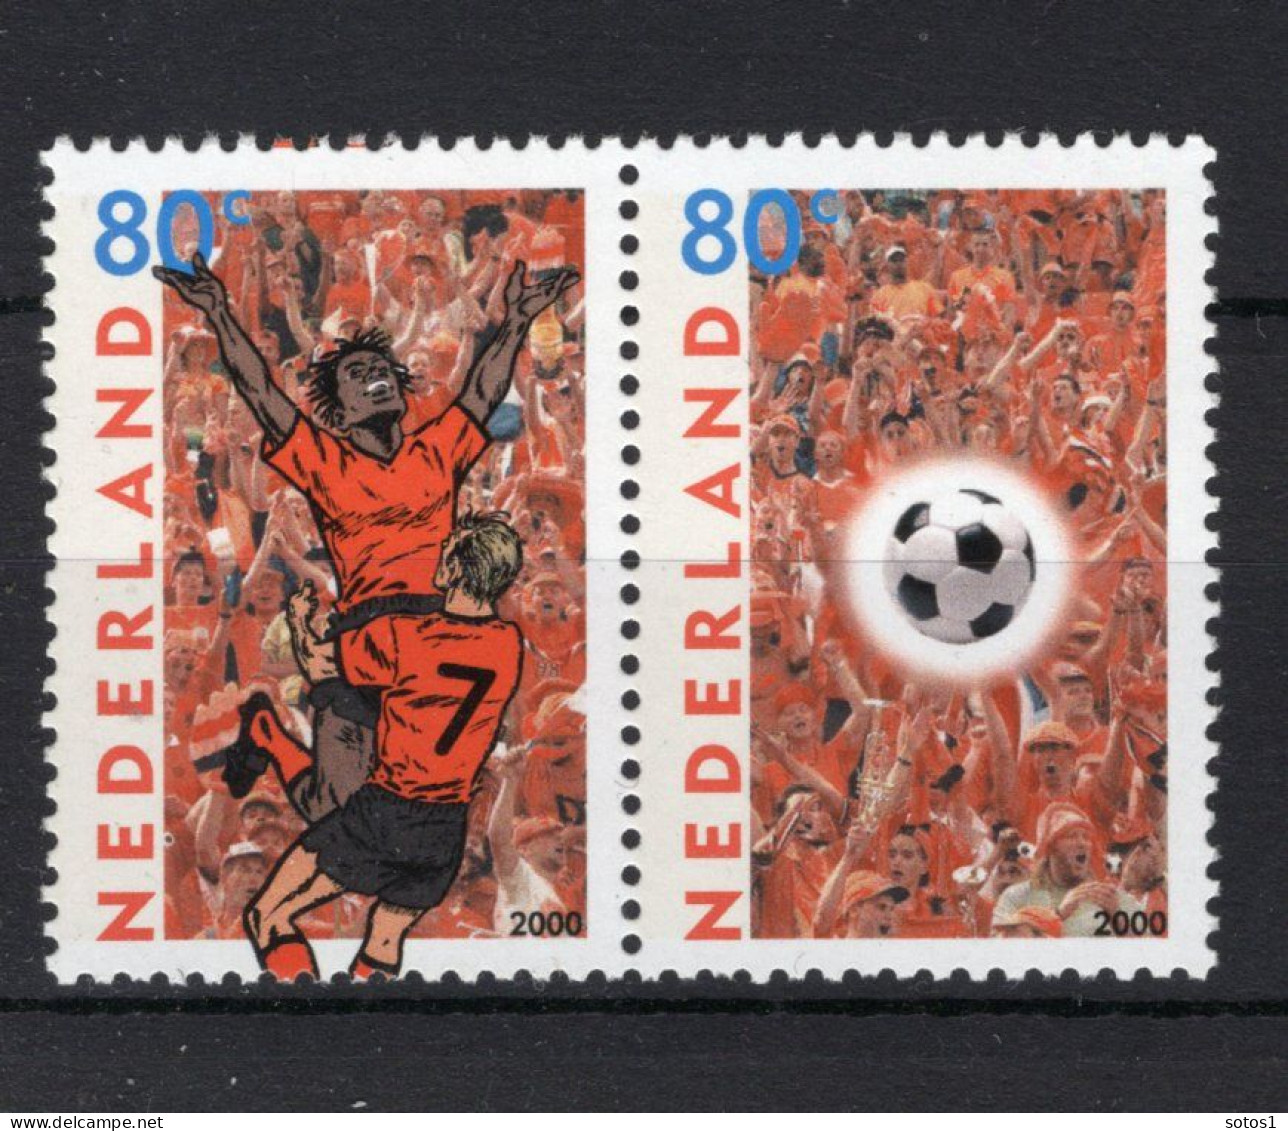 NEDERLAND 1888/1889 MNH 2000 - EK Voetbal - Ongebruikt